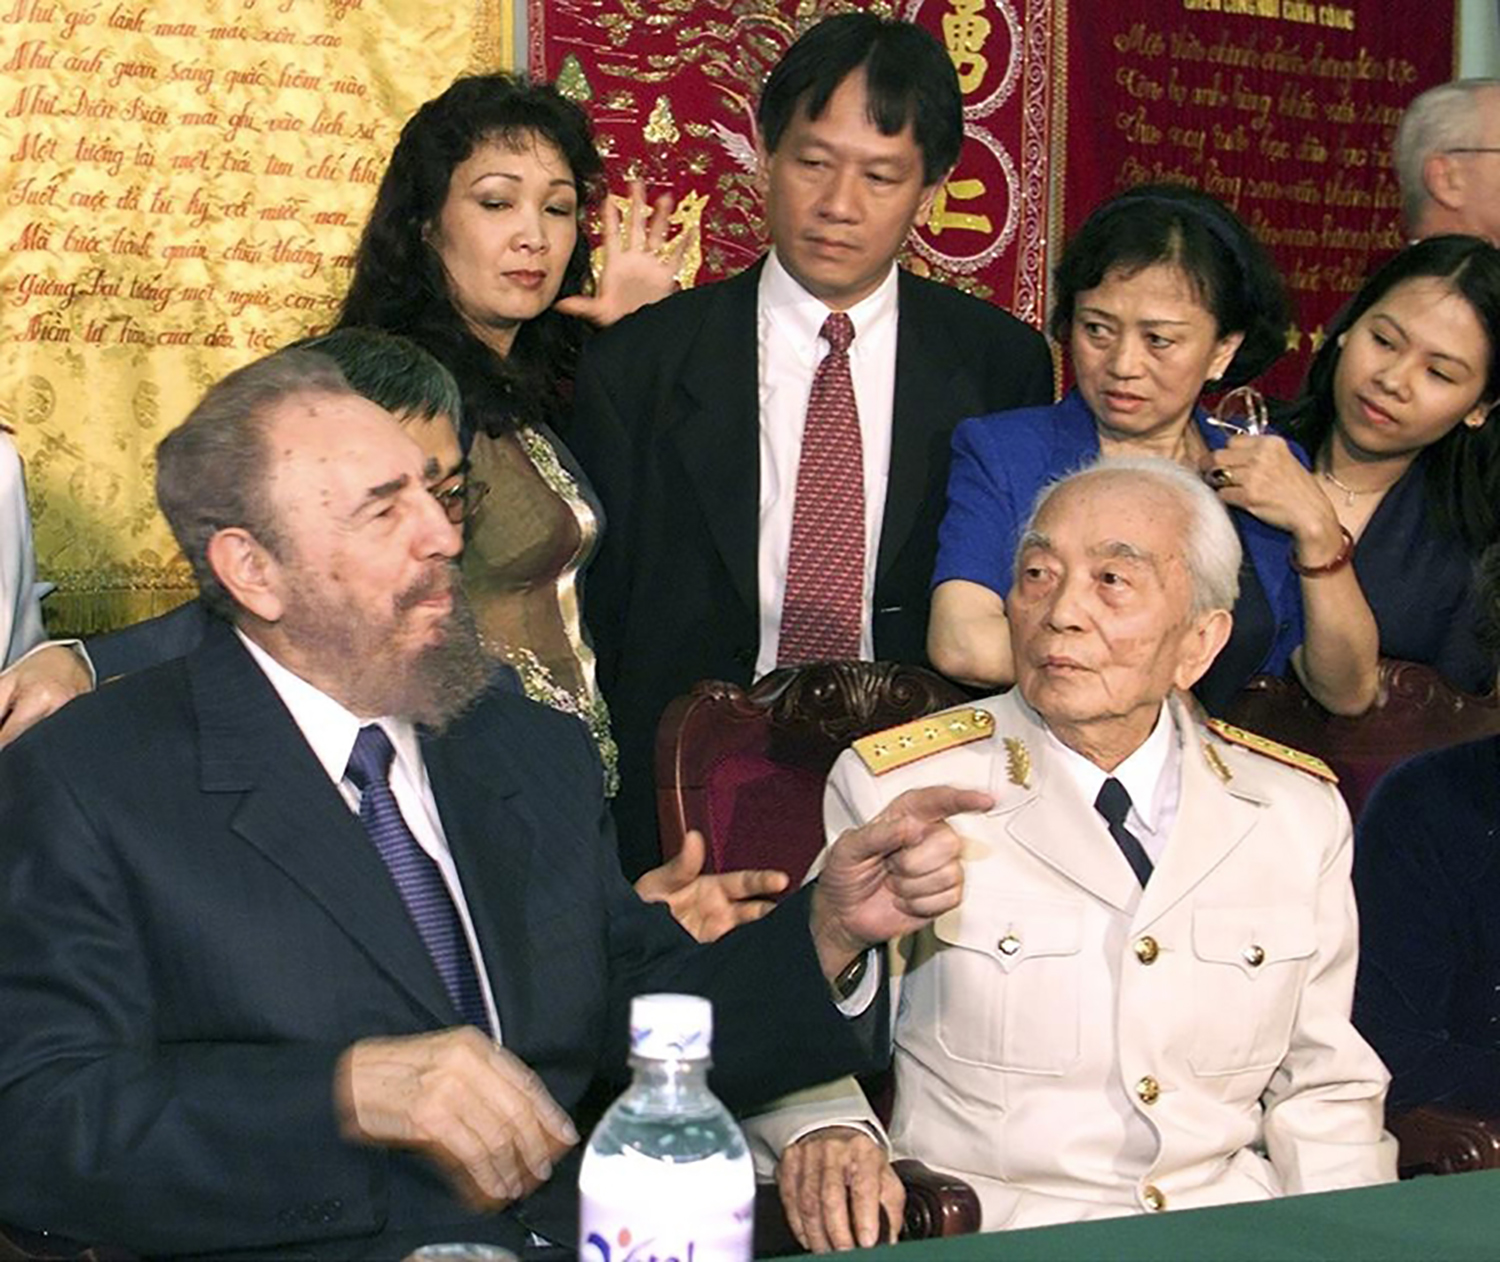 Chủ tịch Cuba Fidel Castro đến thăm Đại tướng Võ Nguyên Giáp tại nhà riêng của ông ở Hà Nội ngày 22-2-2003. Ảnh: REUTERS. <em>(Theo Báo Quân đội nhân dân điện tử)</em>